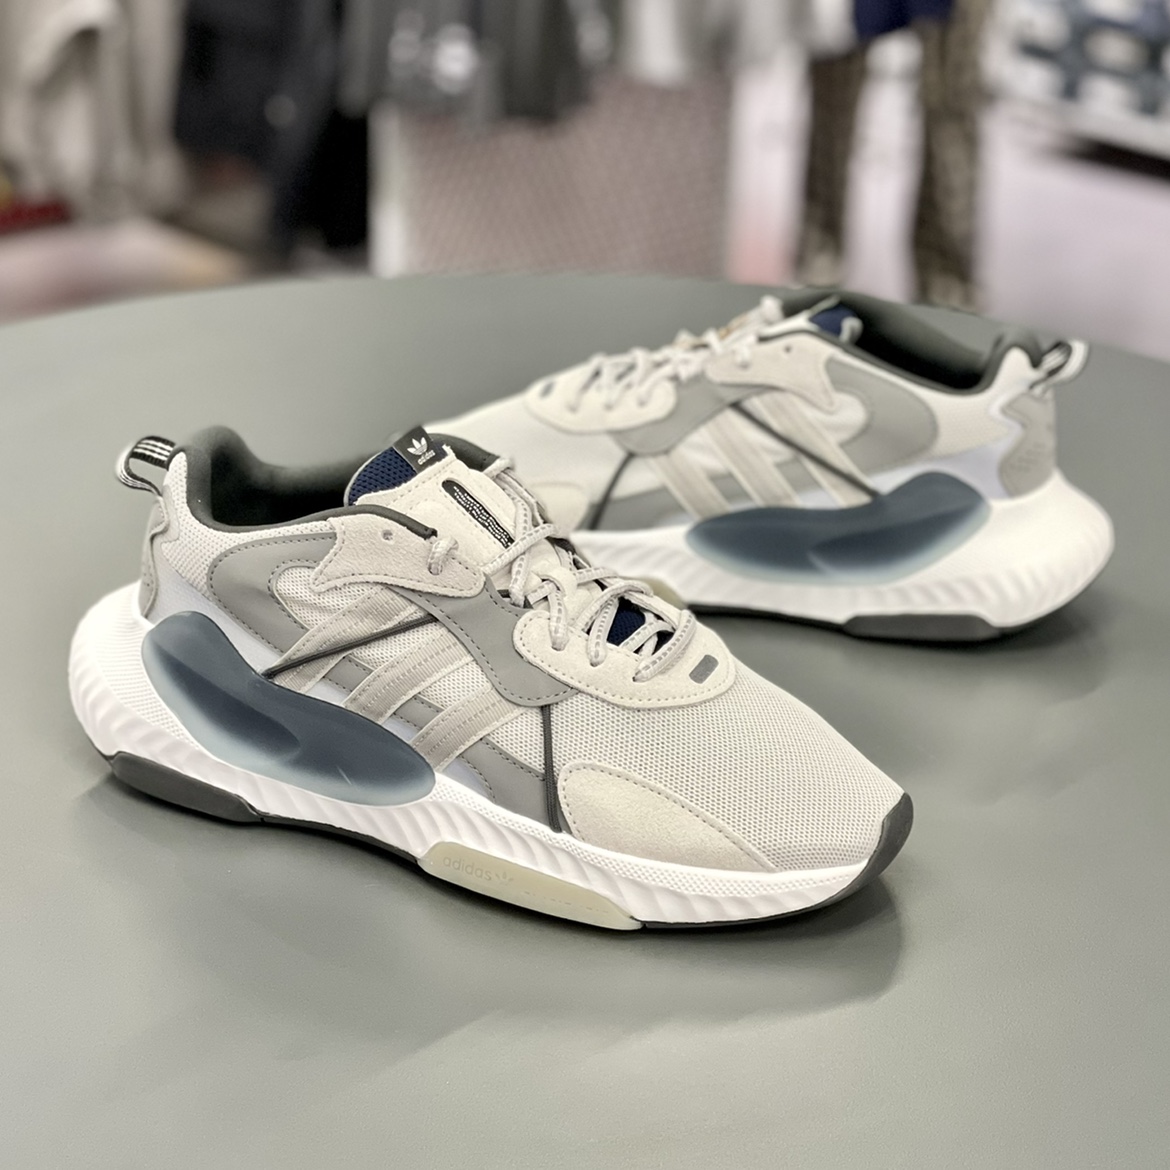 Adidas阿迪达斯三叶草HI-TAIL男子运动休闲跑步鞋泡泡鞋H05766 运动鞋new 跑步鞋 原图主图